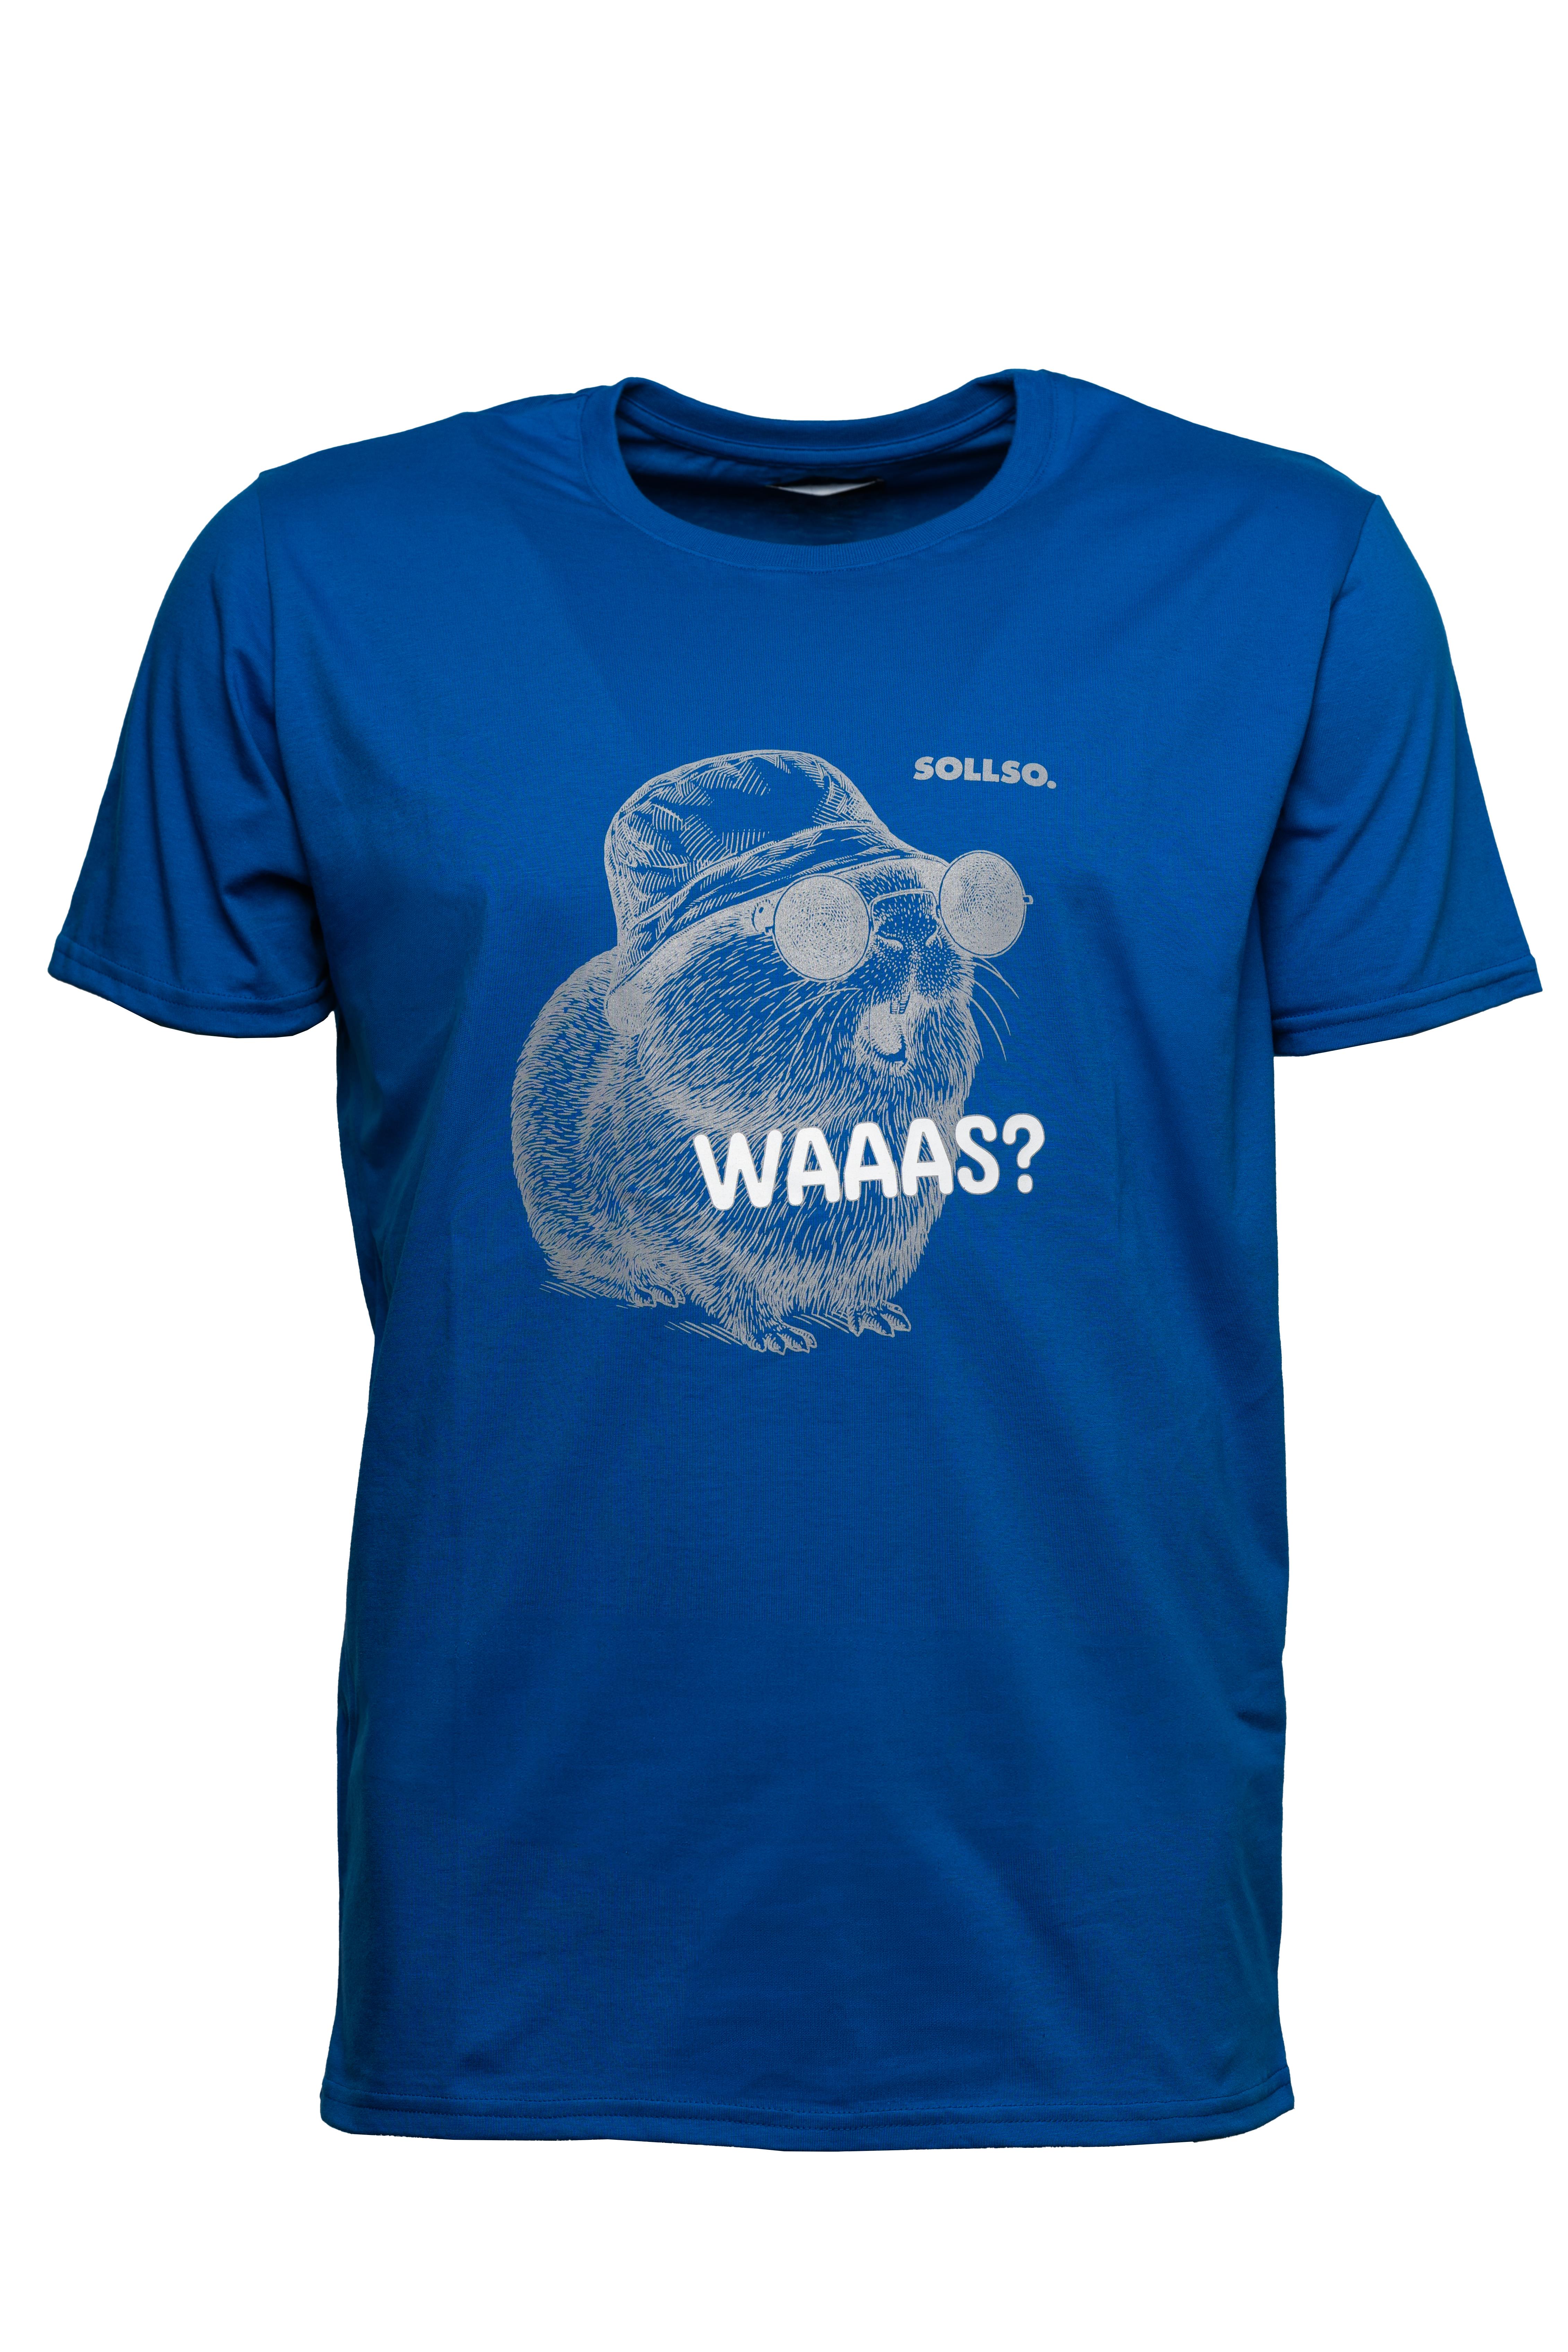 SOLLSO. T-Shirt "Guinea Pig" Farbe Ocean Blue, Größe L